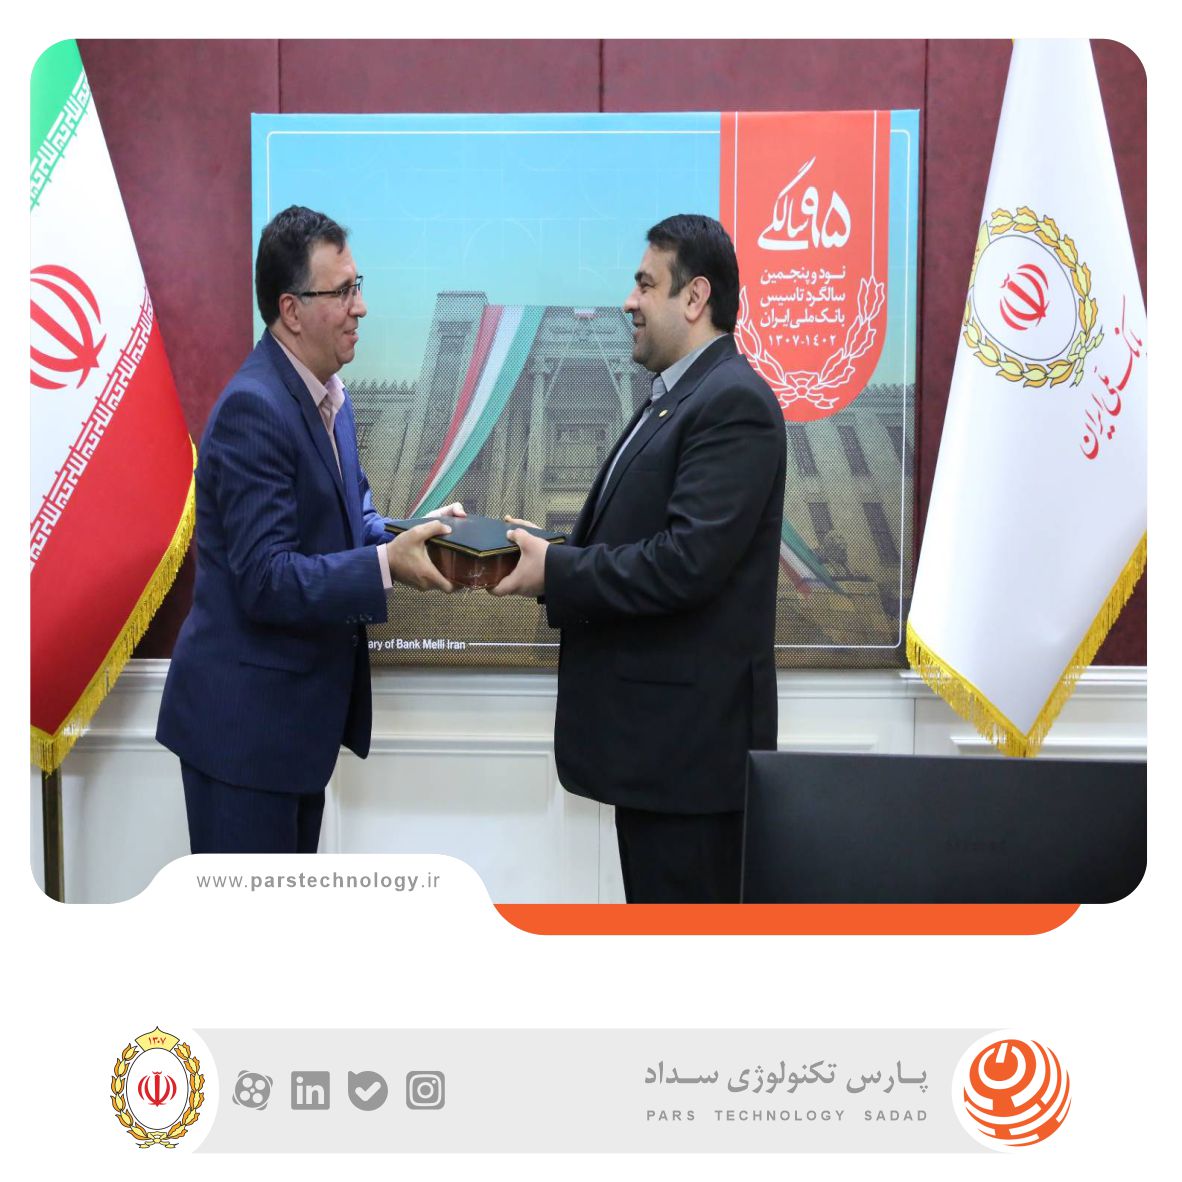 امیر طیبی به عنوان سرپرست معاونت فناوری اطلاعات و شبکه ارتباطات بانک ملی ایران معرفی شد